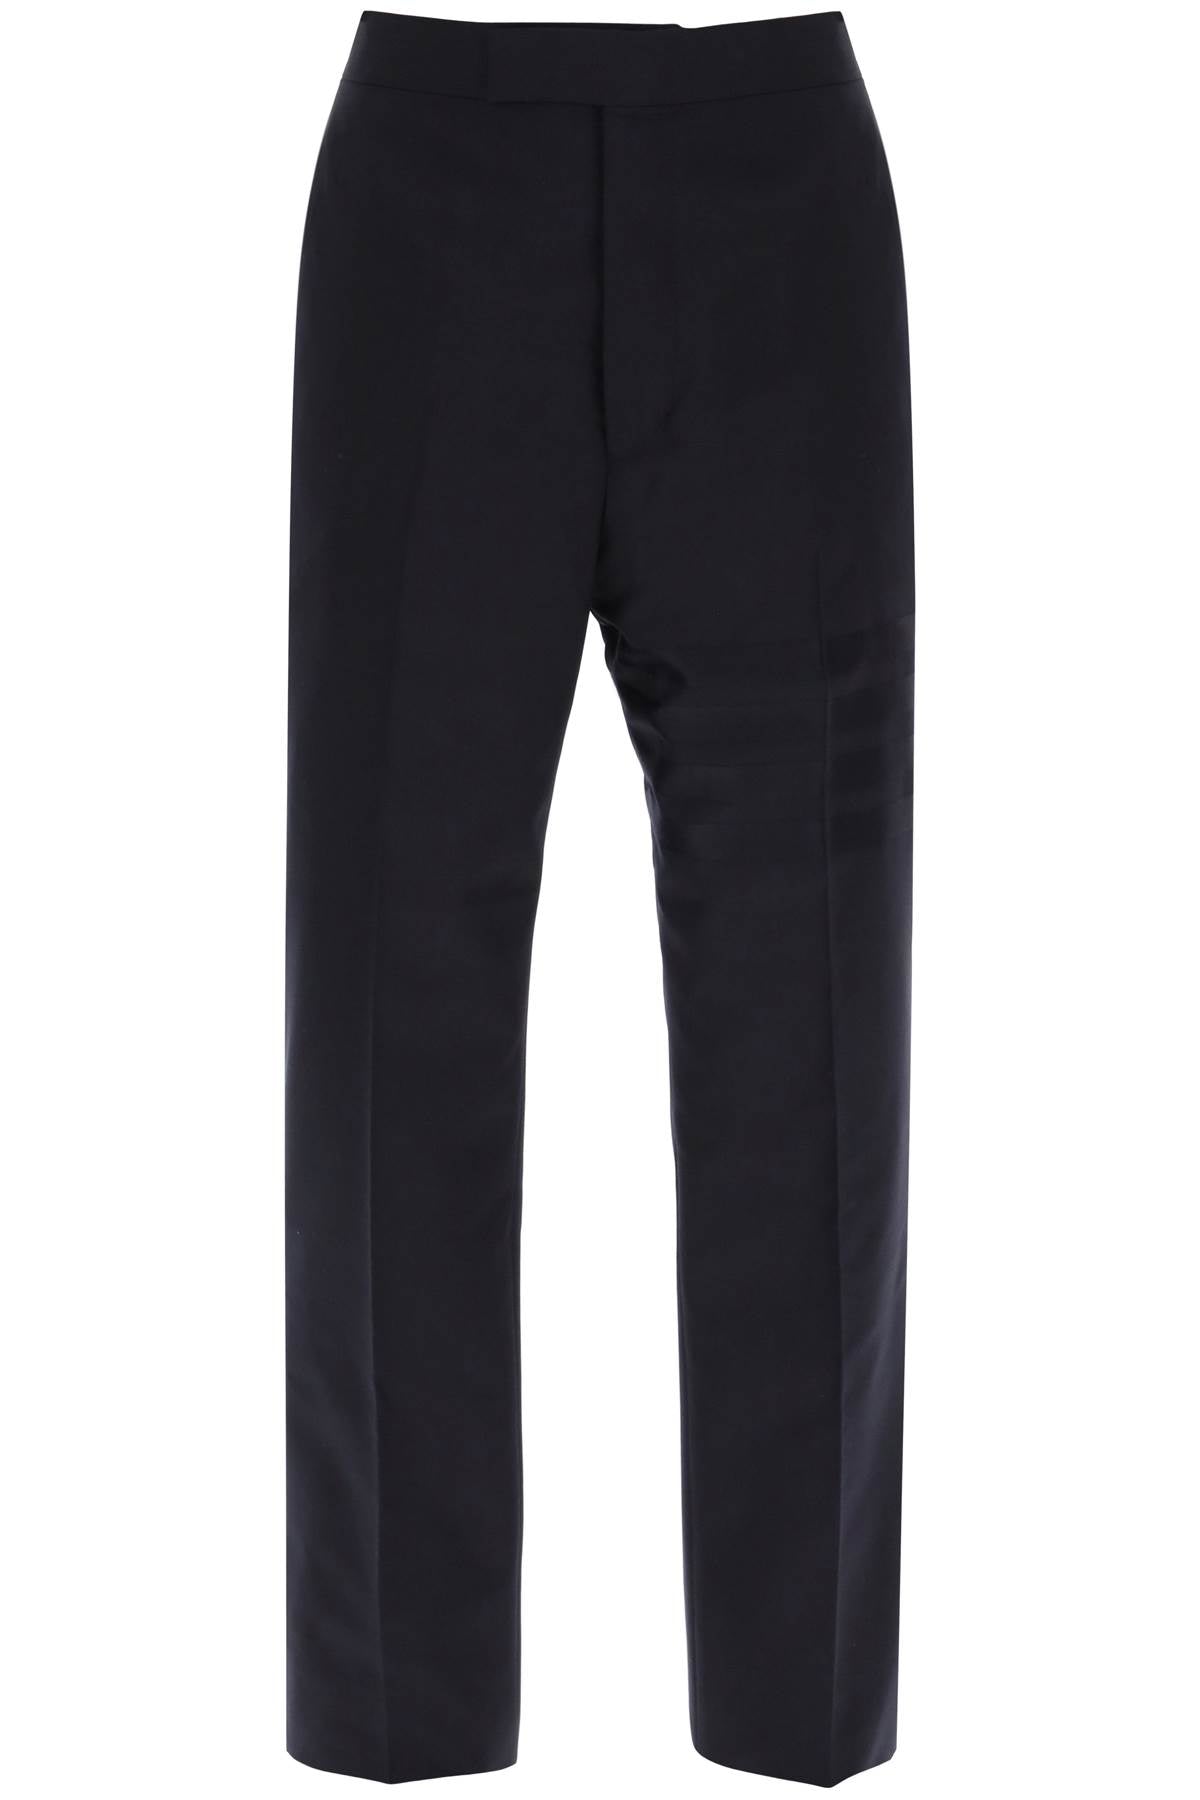 Thom browne 4-bar wool trousers-0